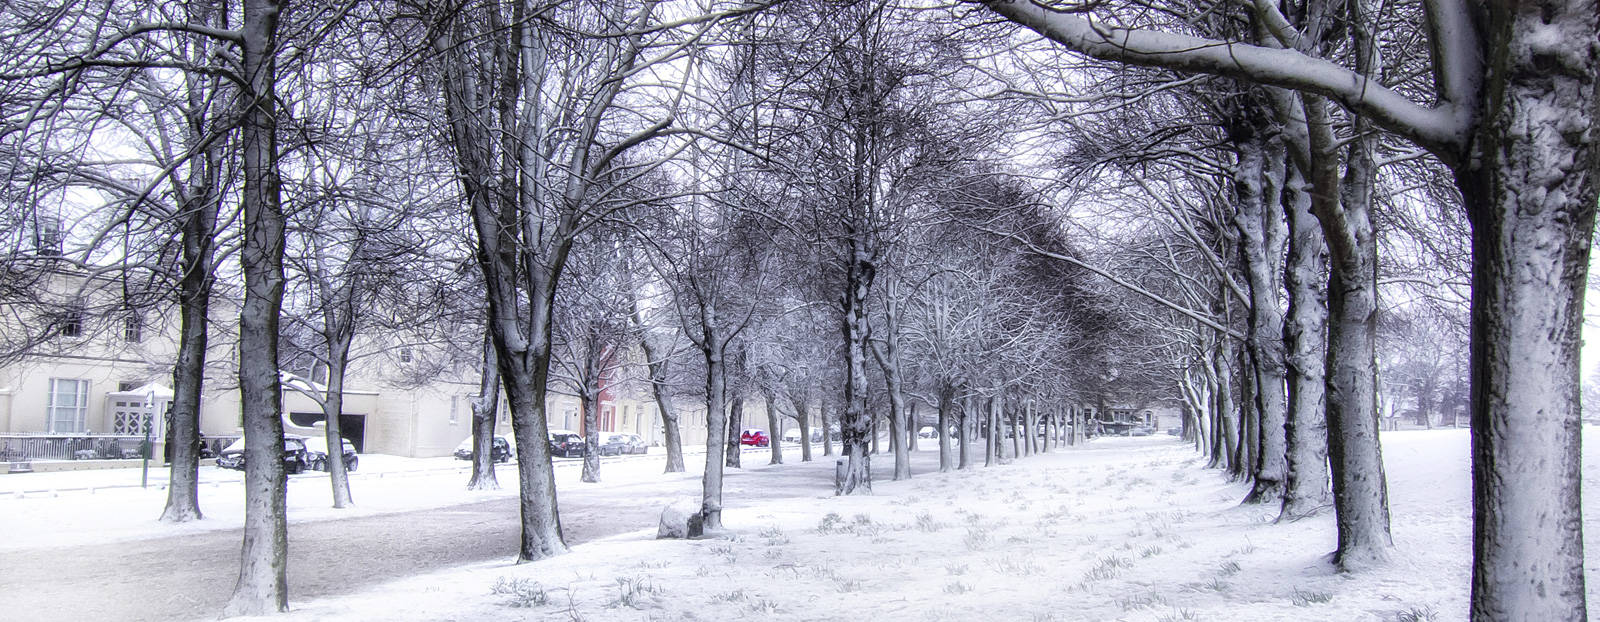 Churchill Avenue in the snow